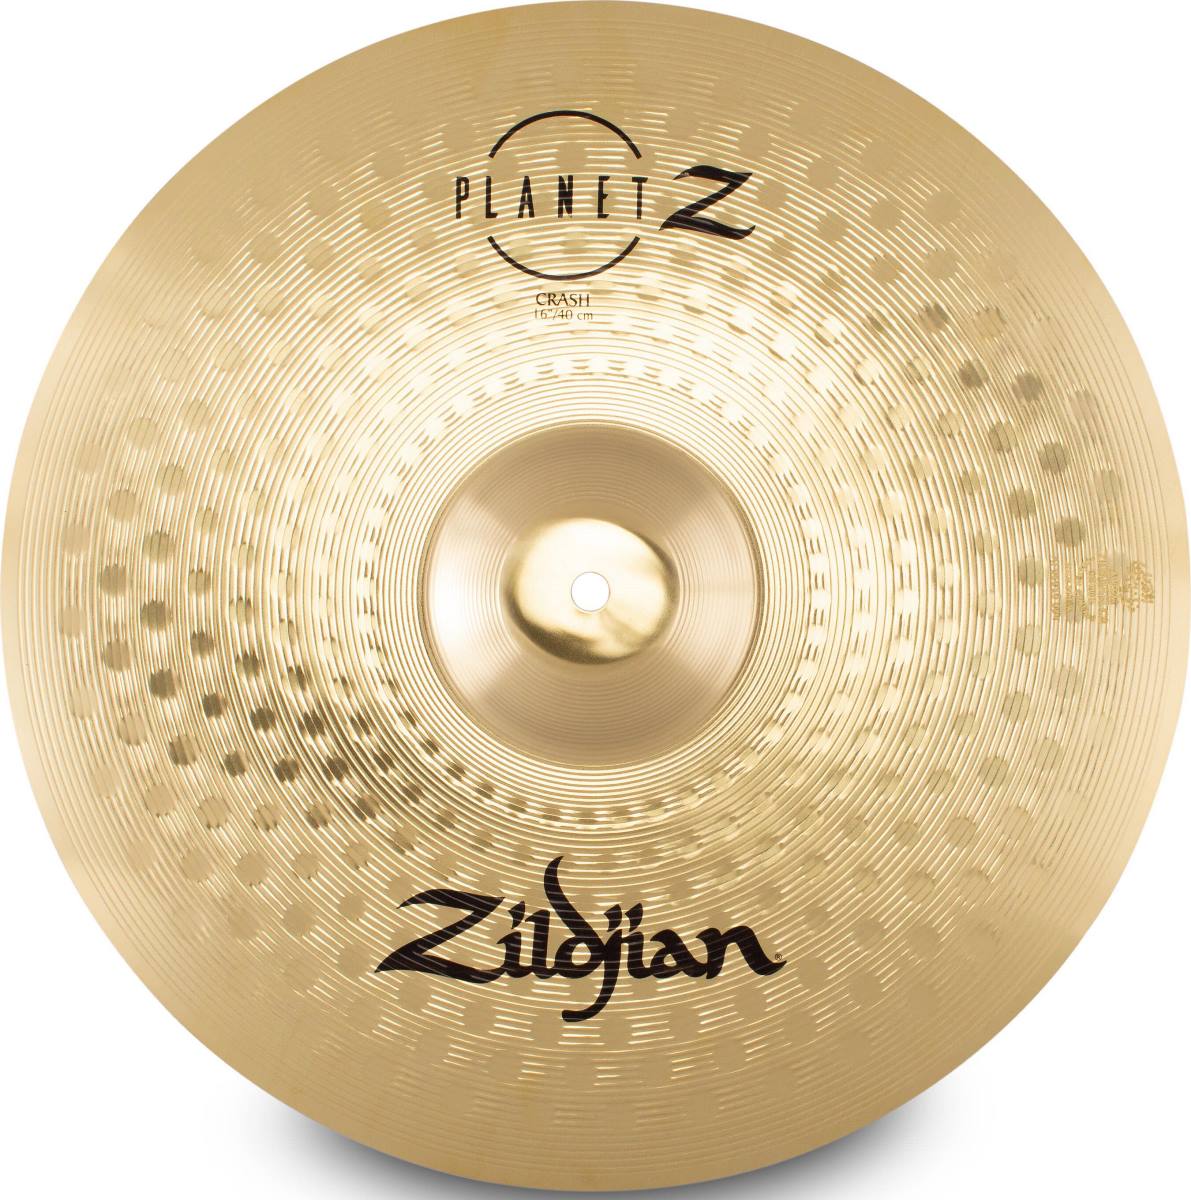 Тарелки, барабаны для ударных установок Zildjian ZP16C 16' PLANET Z CRASH тарелки барабаны для ударных установок zildjian kcsp4681 k custom dry cymbal set